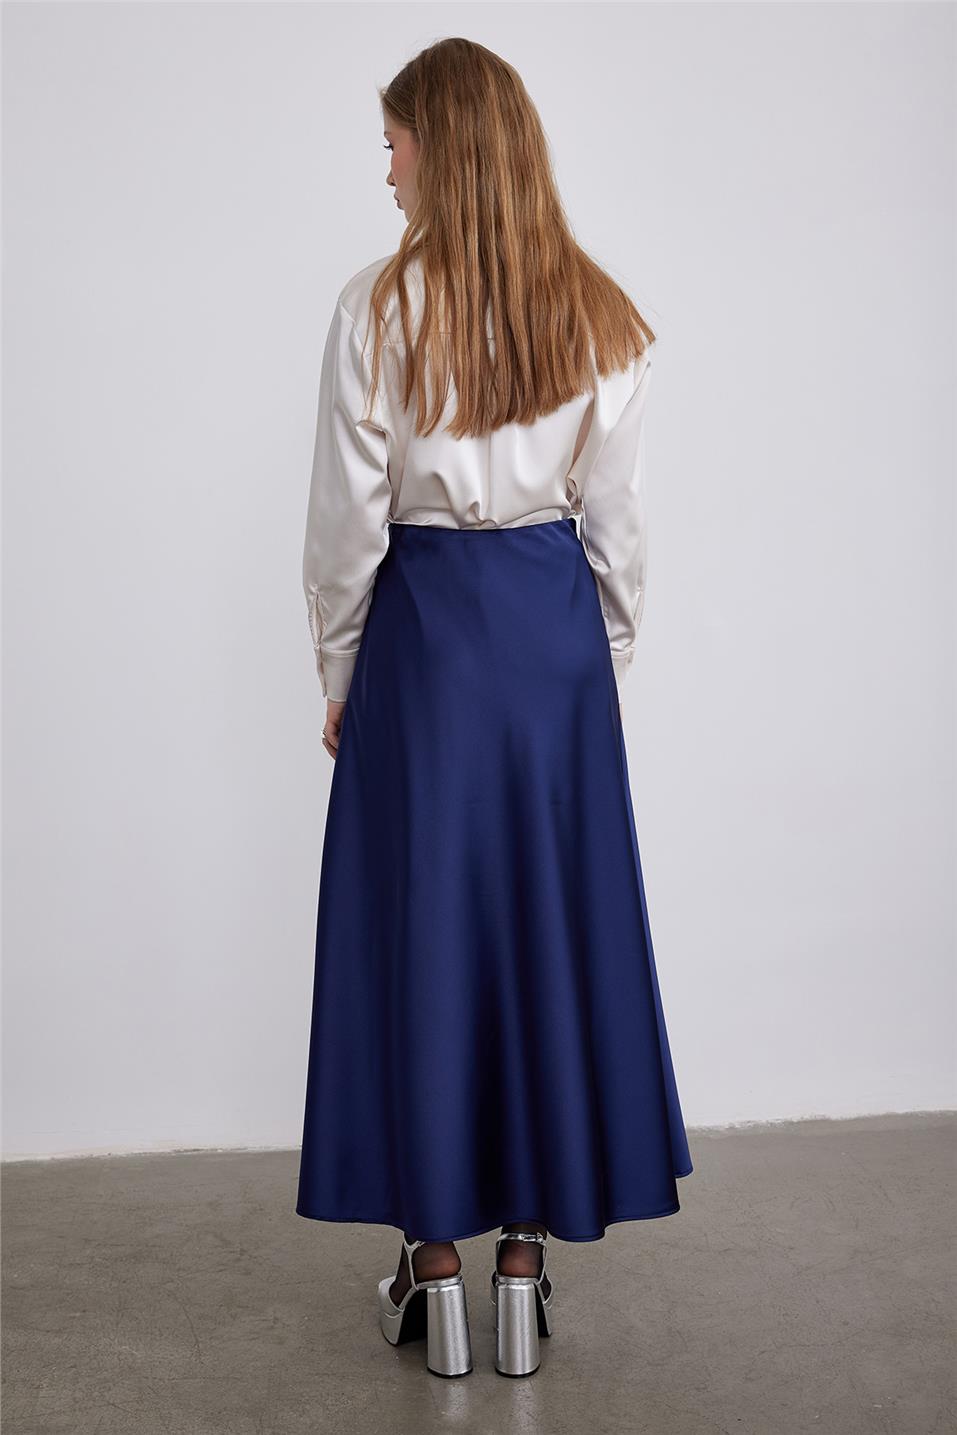 Navy Blue Satin Skirt